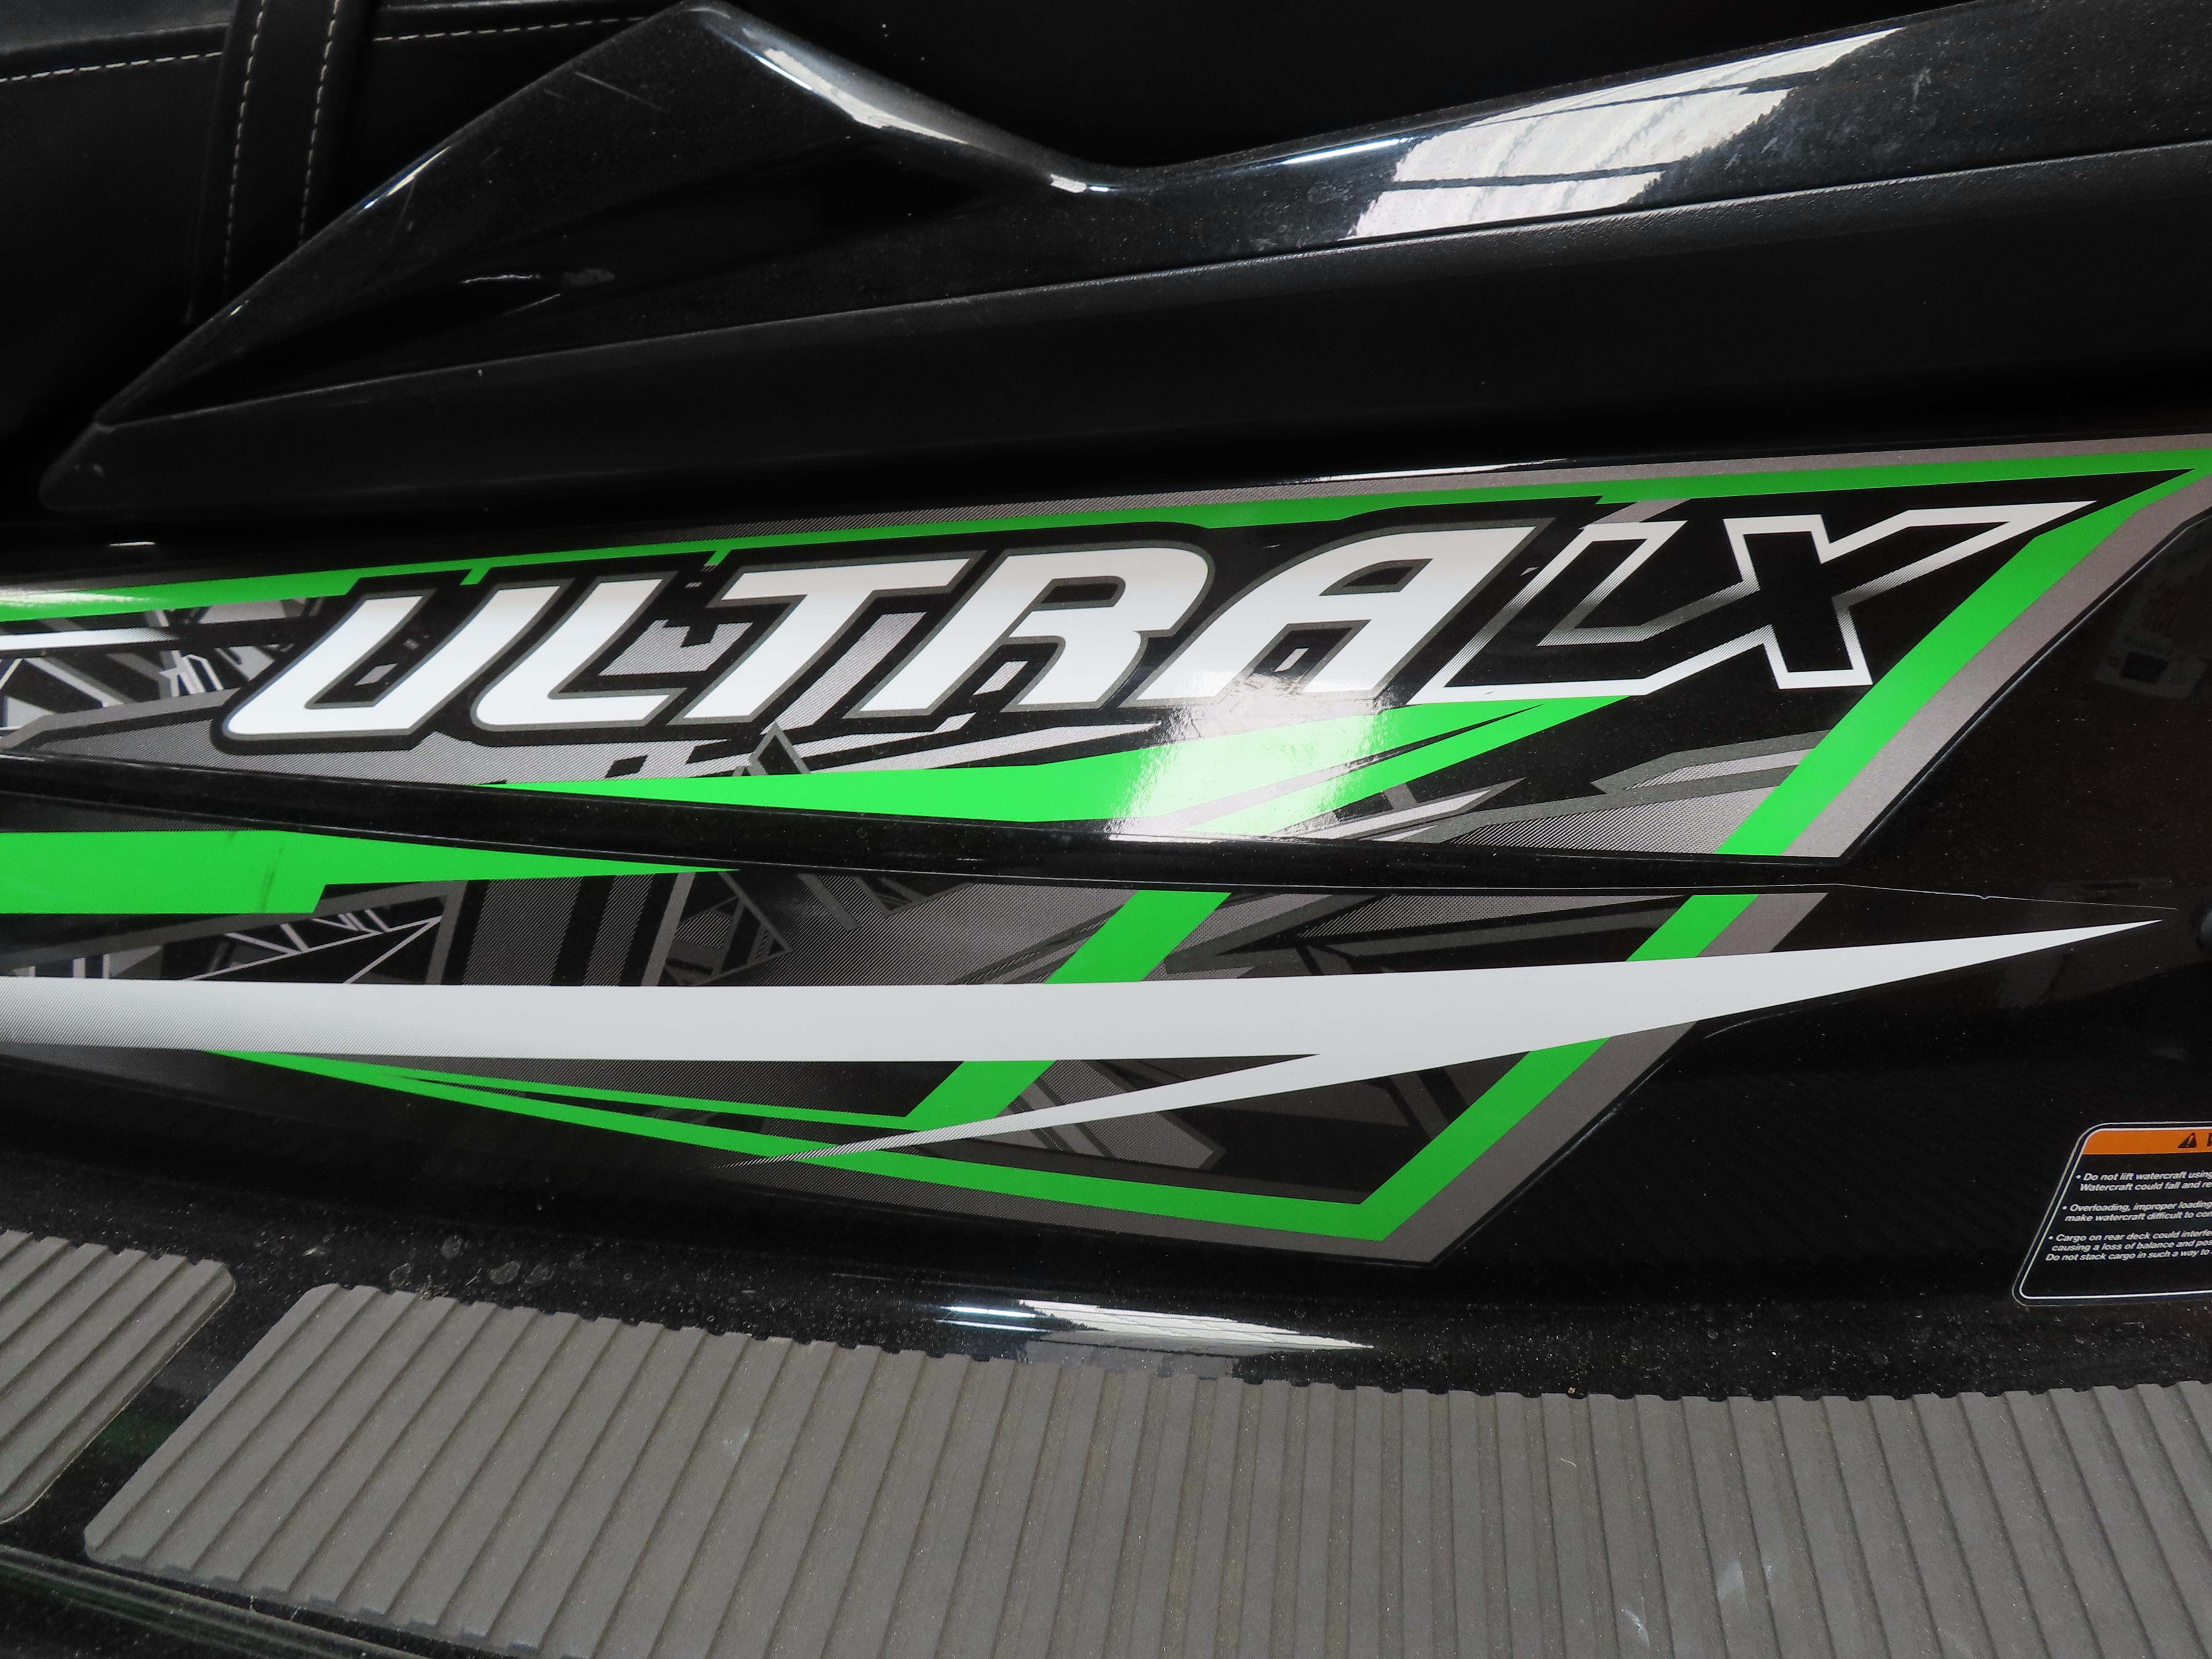 2014 Kawasaki Ultra